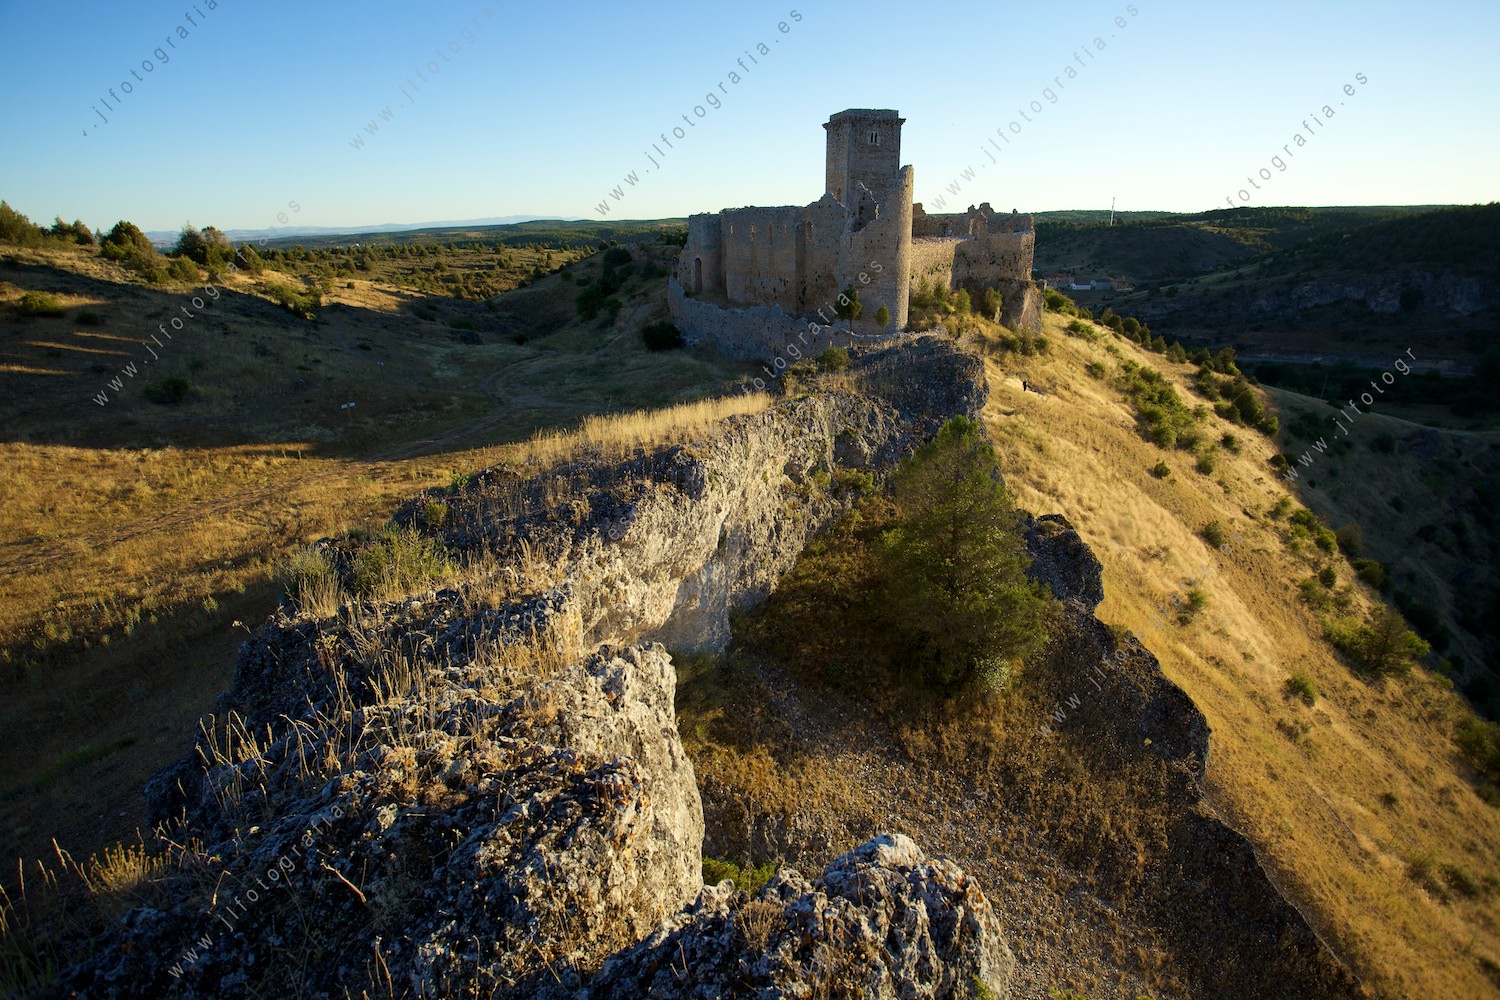 El castillo medieval de Ucero, surge majestuoso en lo alto de iuna loma 